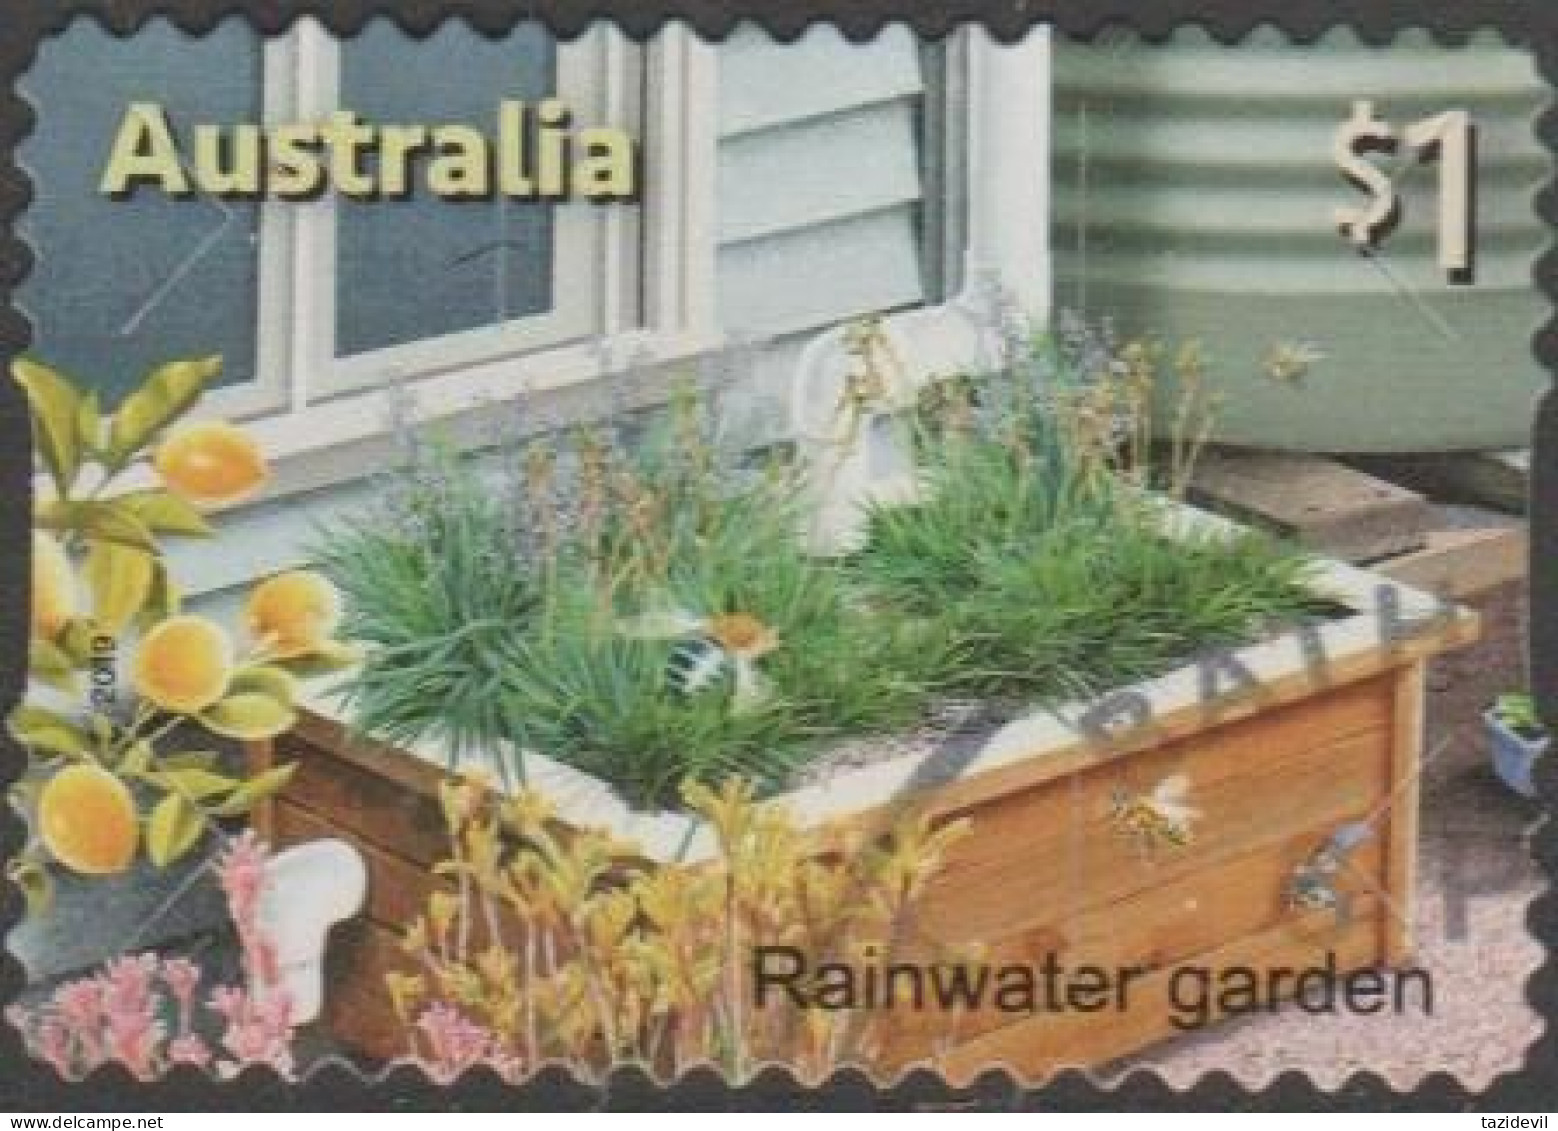 AUSTRALIA - DIE-CUT-USED 2019 $1.00 Stamp Collecting Month- In The Garden - Rainwater Garden - Gebraucht